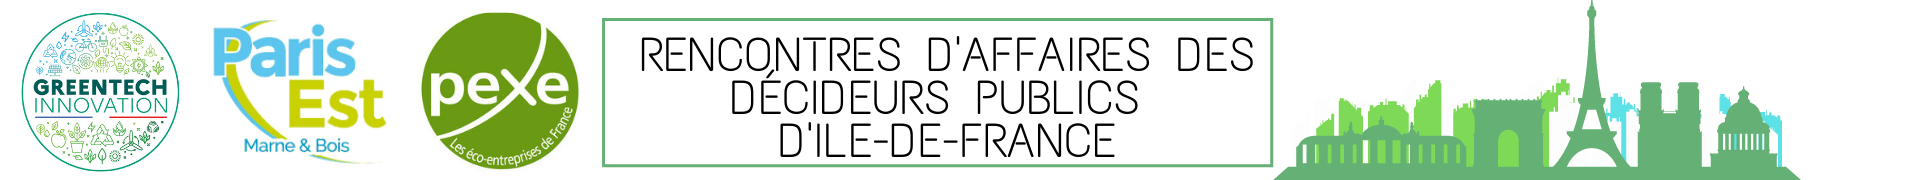 Rencontres d'affaires des décideurs publics d'Ile-de-France